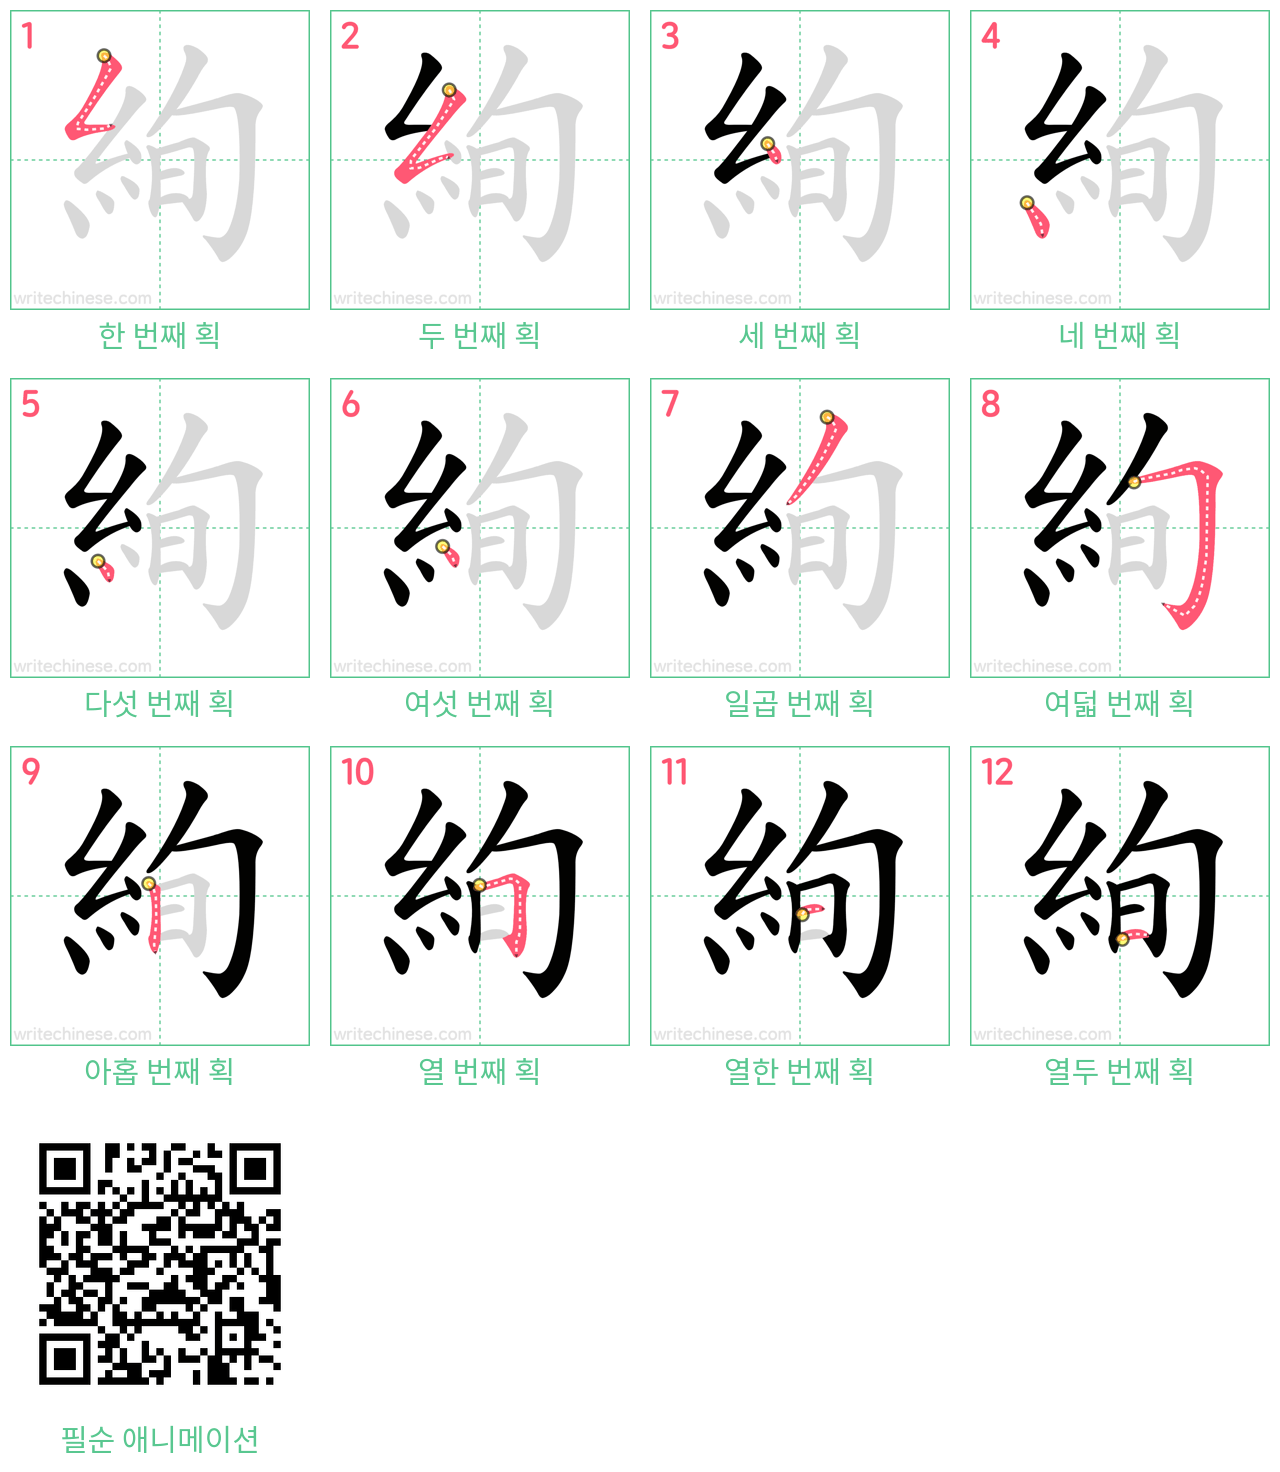 絢 step-by-step stroke order diagrams